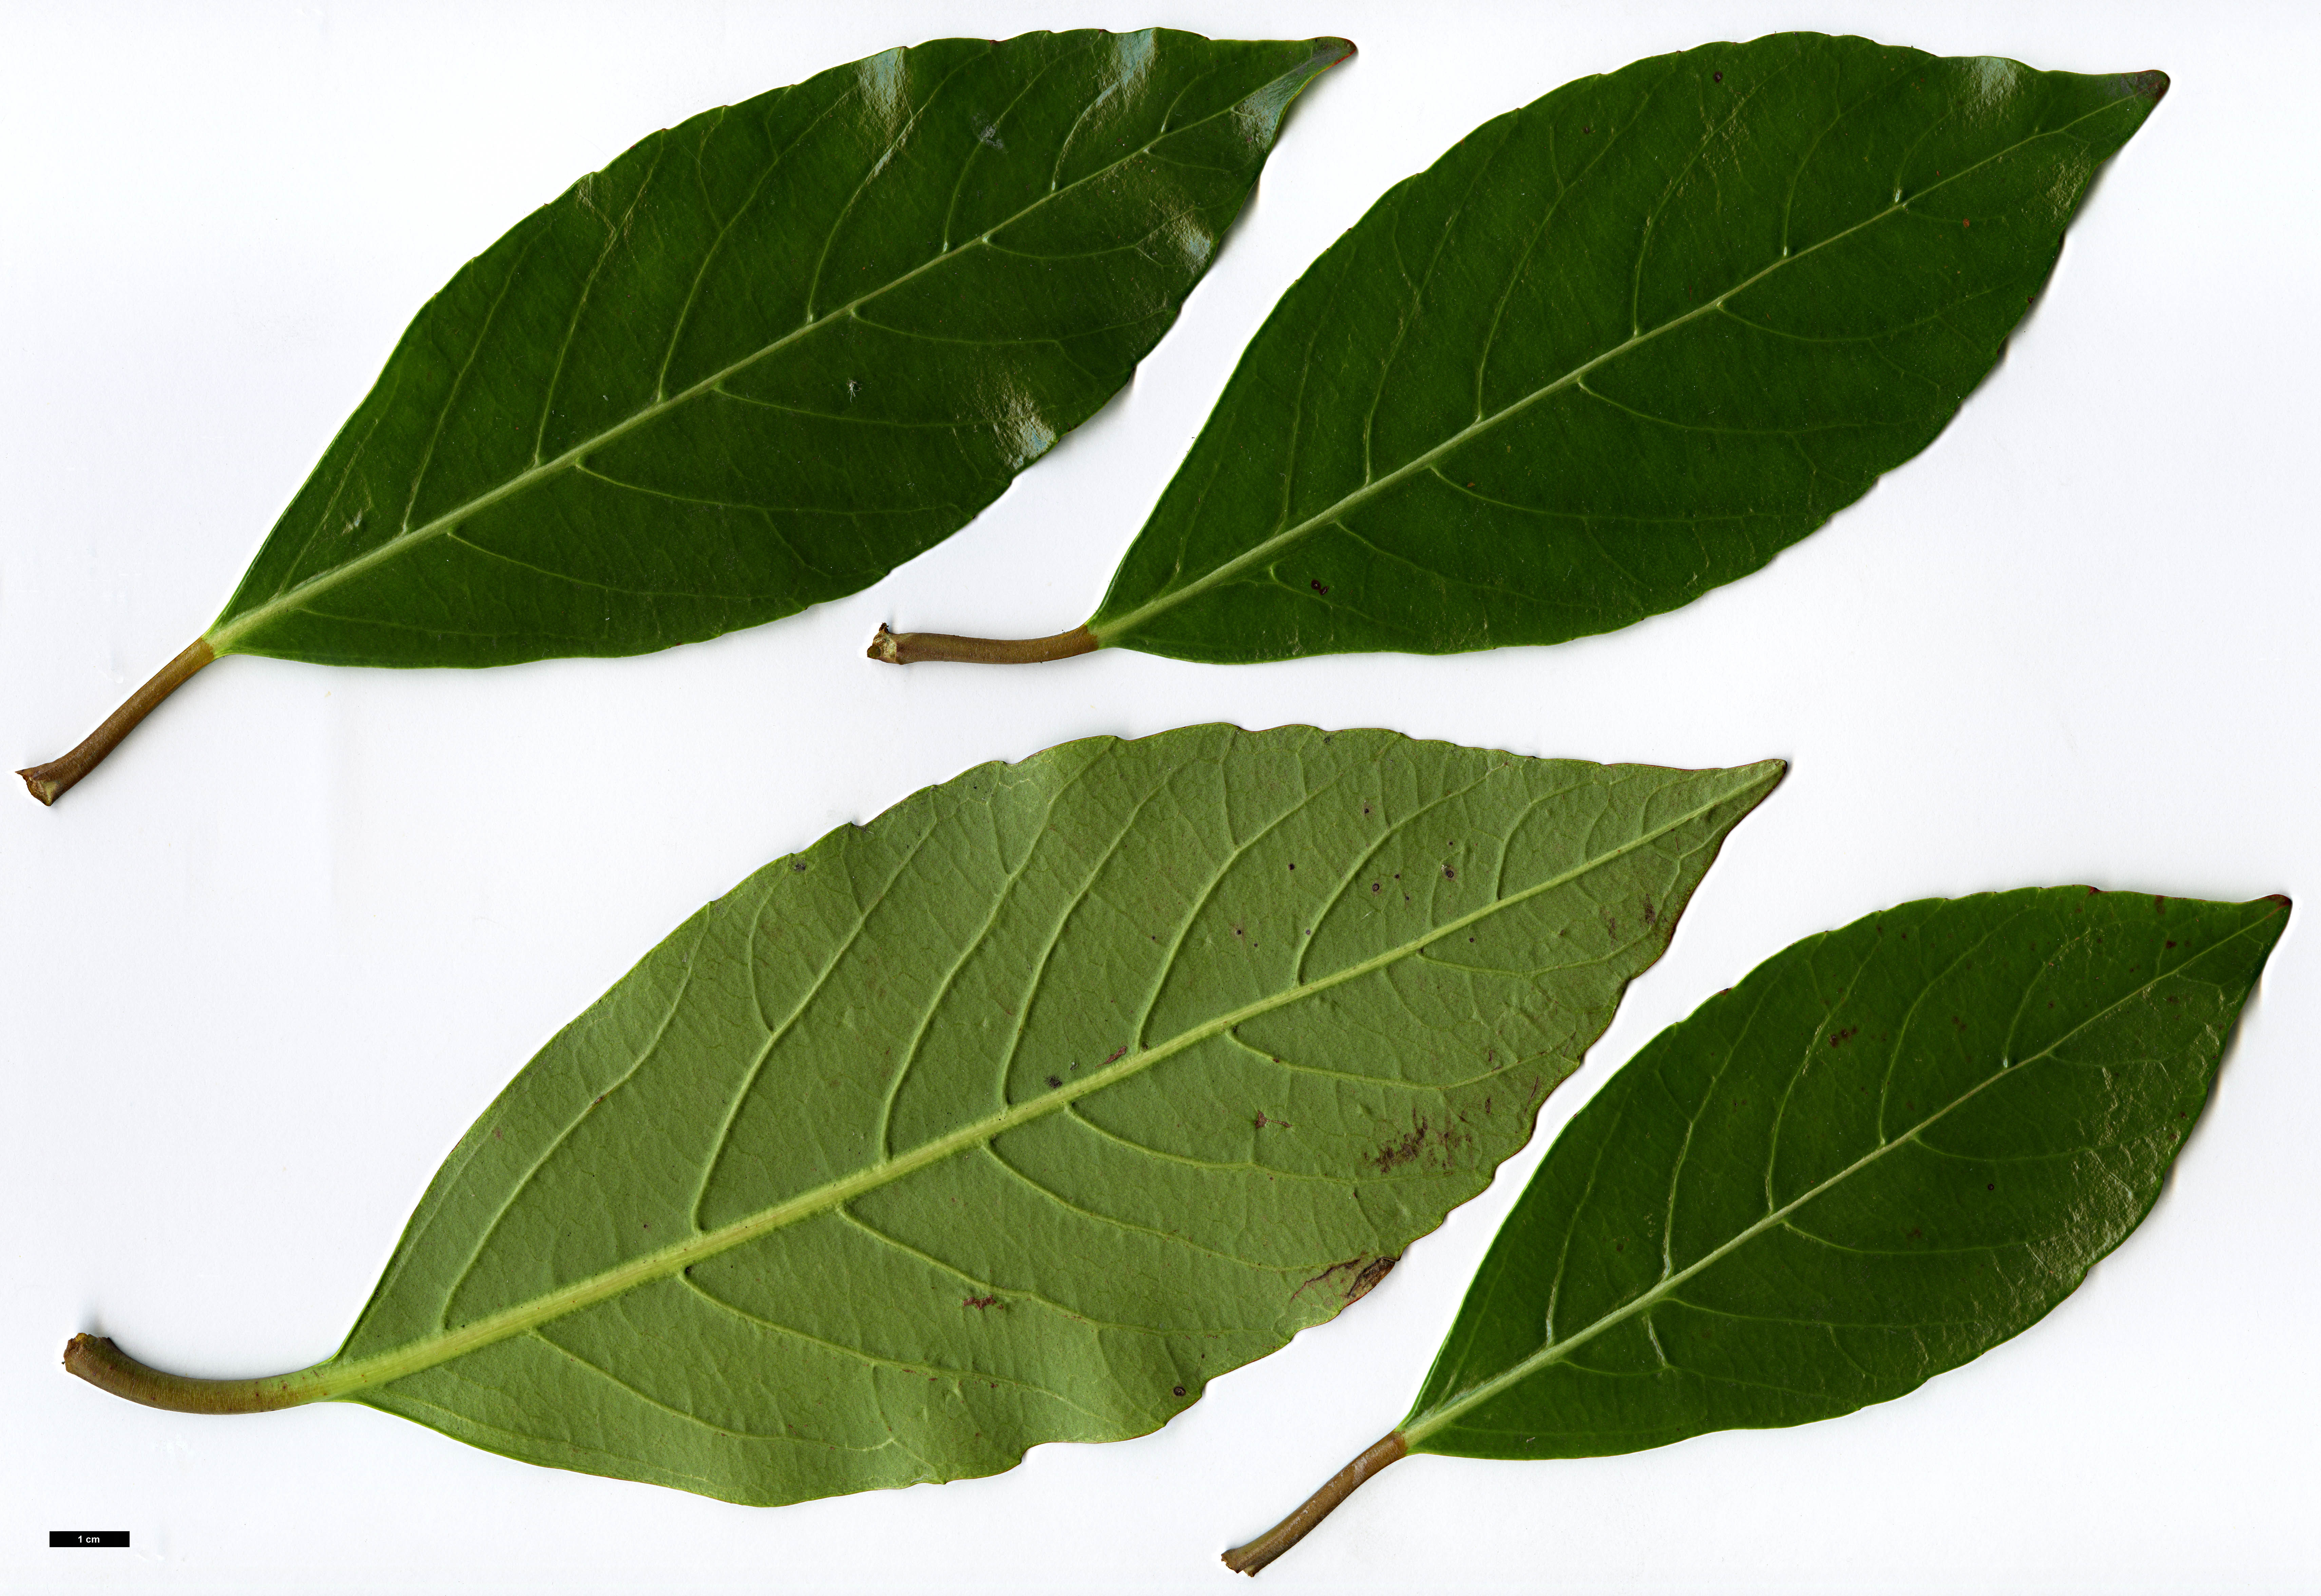 High resolution image: Family: Adoxaceae - Genus: Viburnum - Taxon: odoratissimum var. awabuki